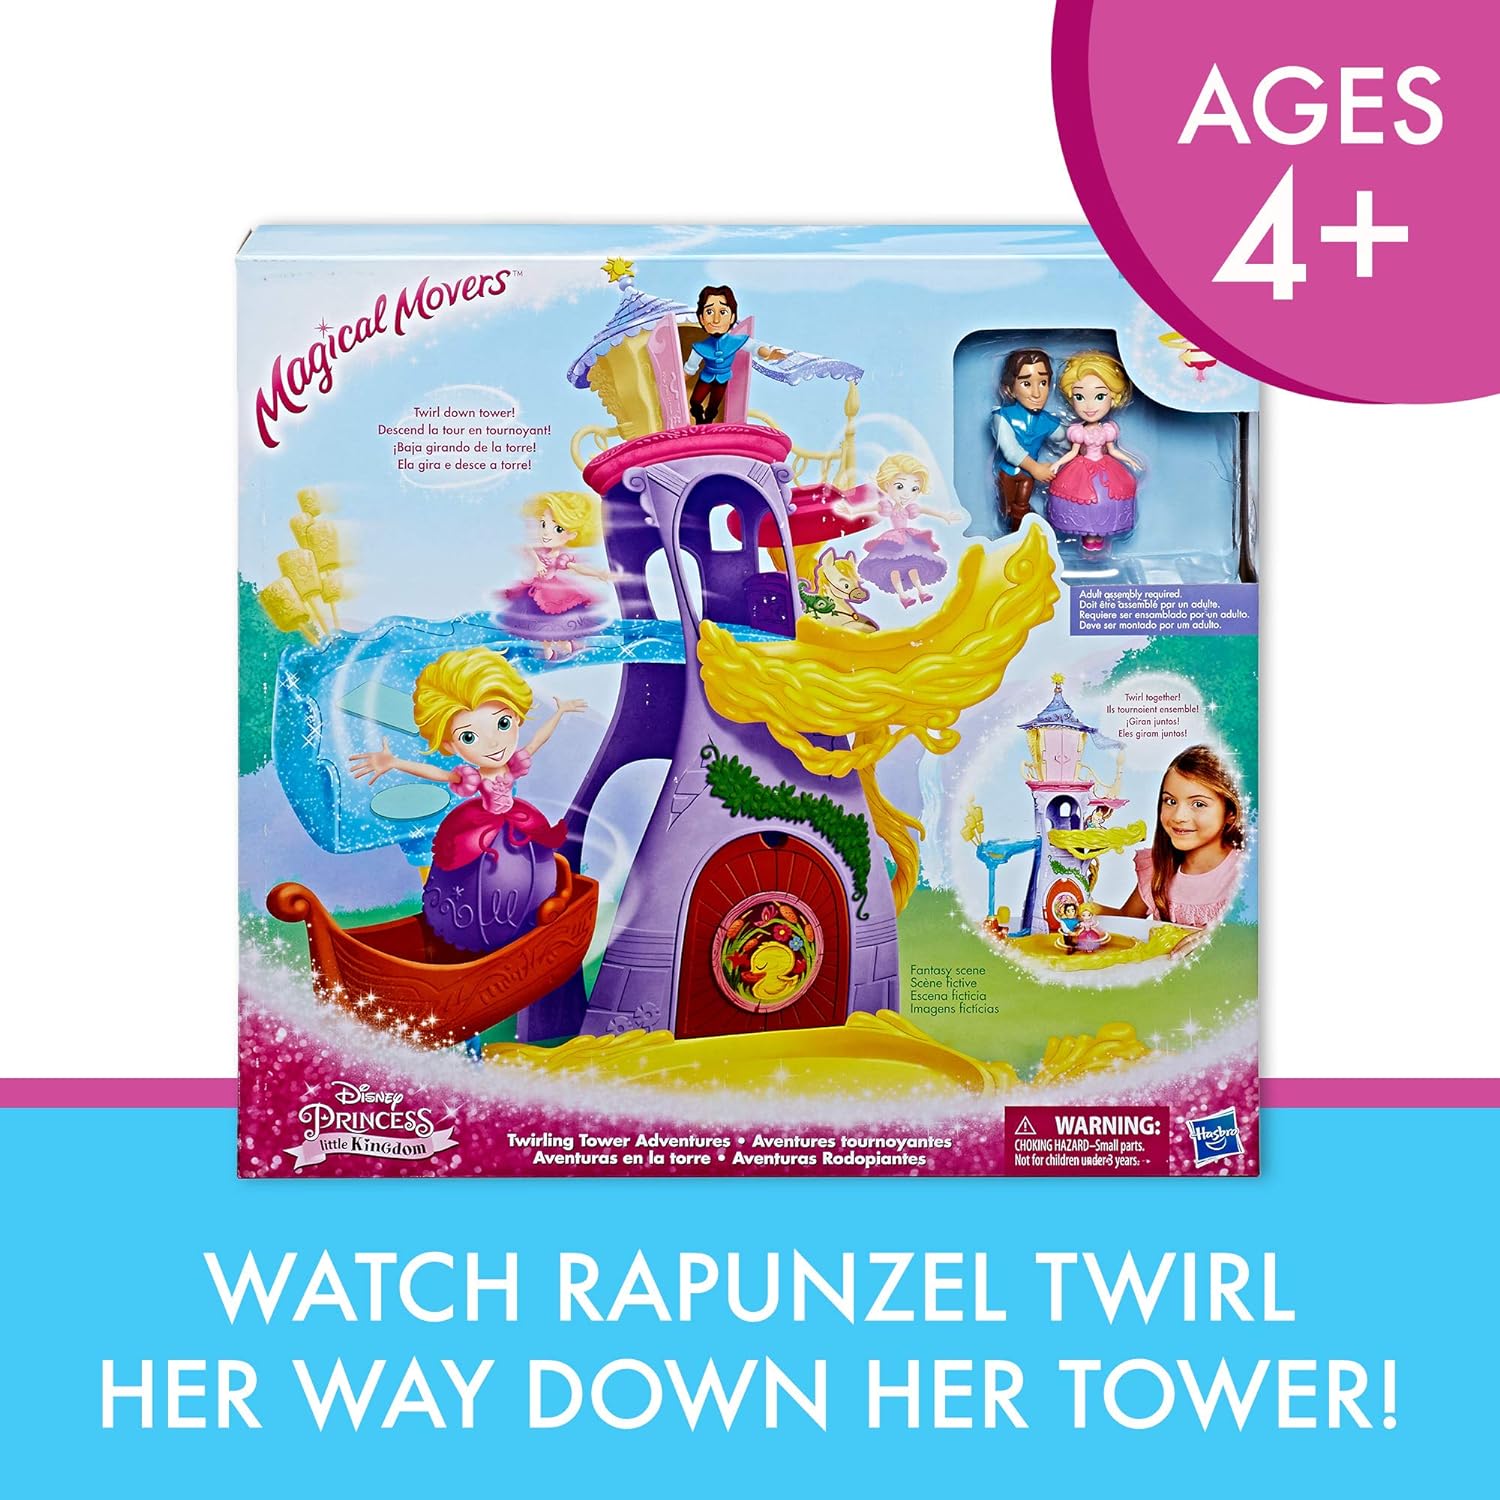 新規購入 Included Dolls 2 Adventures Tower Twirling Movers Magical Playset Princess 送料無料 Disney ディズニープリンセス タングルド 塔の上のラプンツェル Rapunzel ディズニープリンセス タングルド For塔の上のラプンツェル Toy Fitzherbert Eugene And